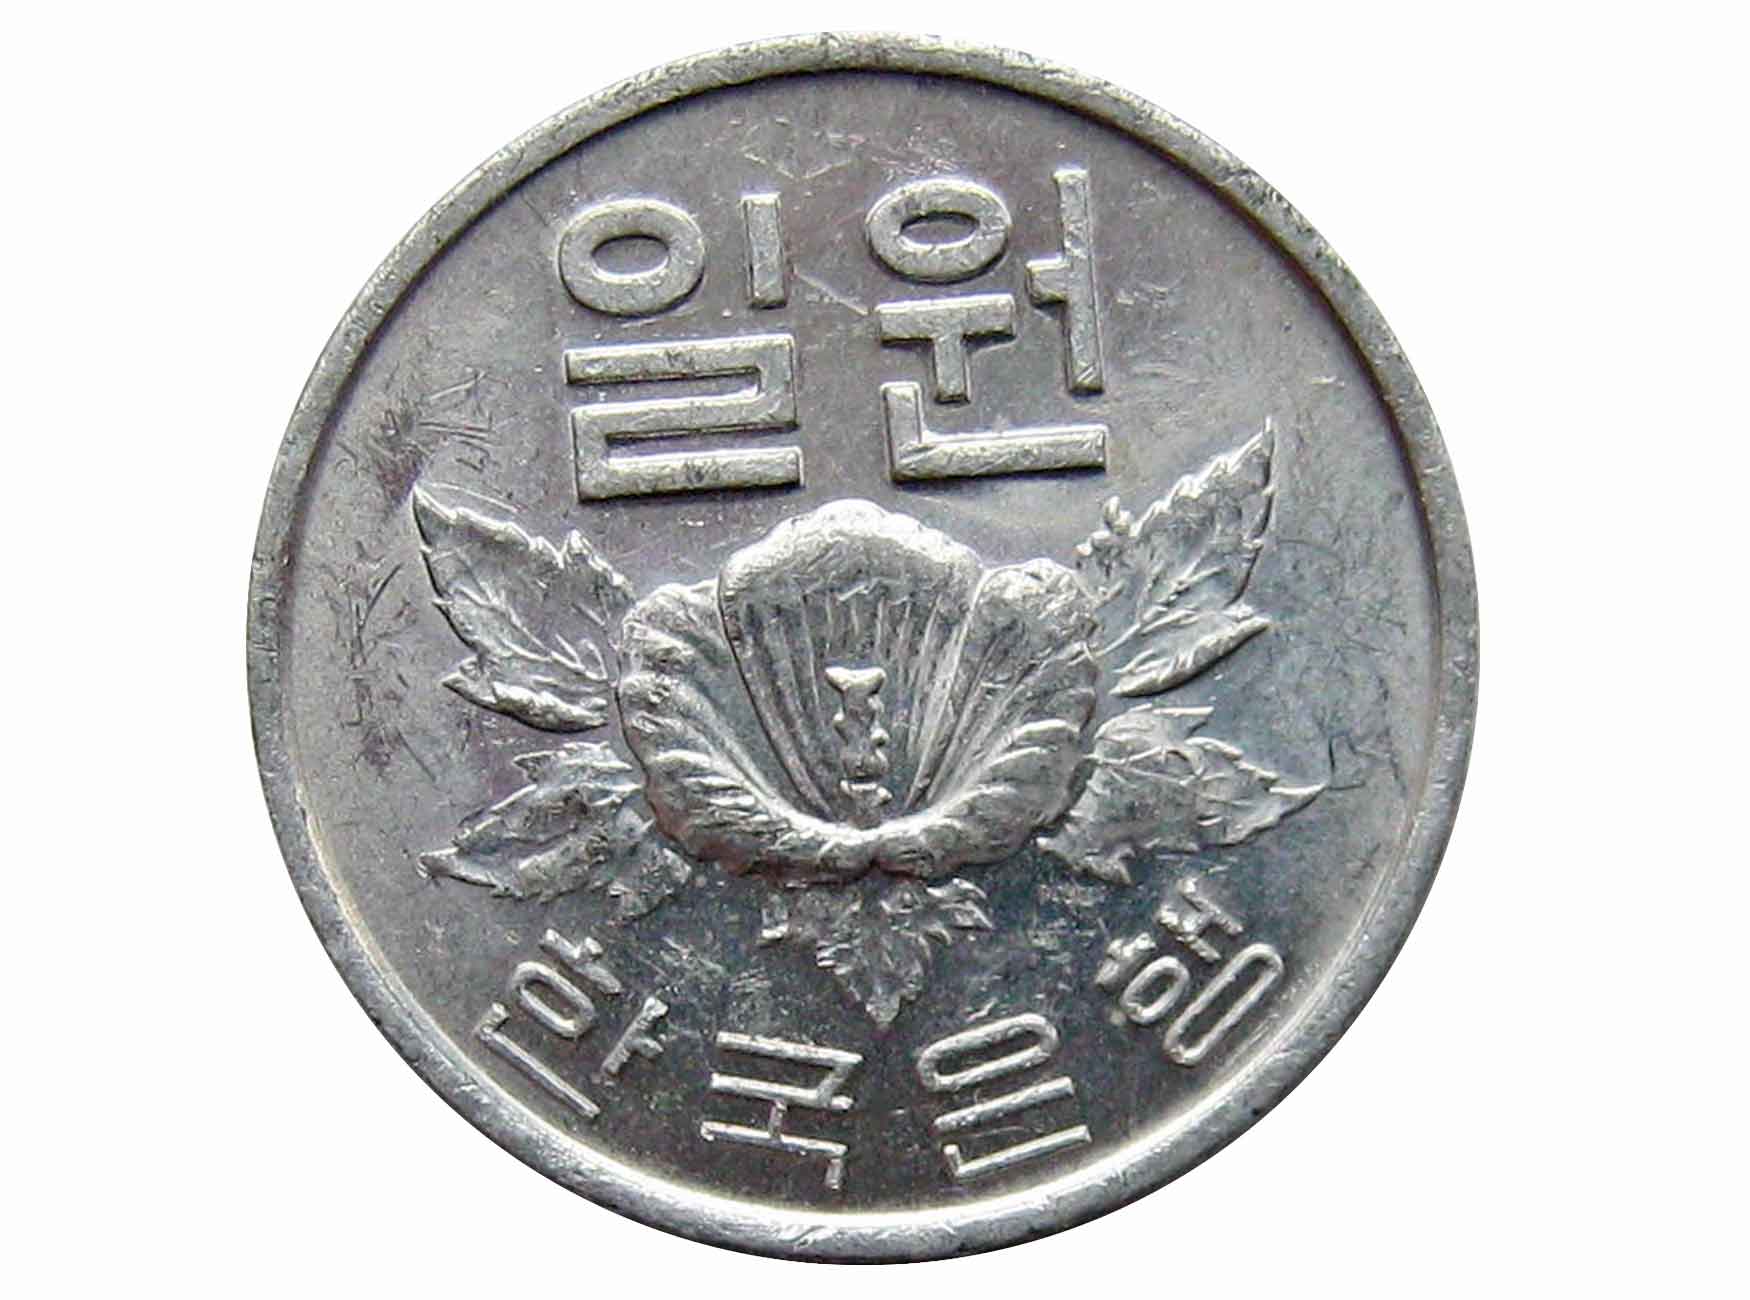 195000 вон в рублях сколько. 1 Вон Южная Корея. Корейская деньга. 1 Вона монета. Деньги Кореи.